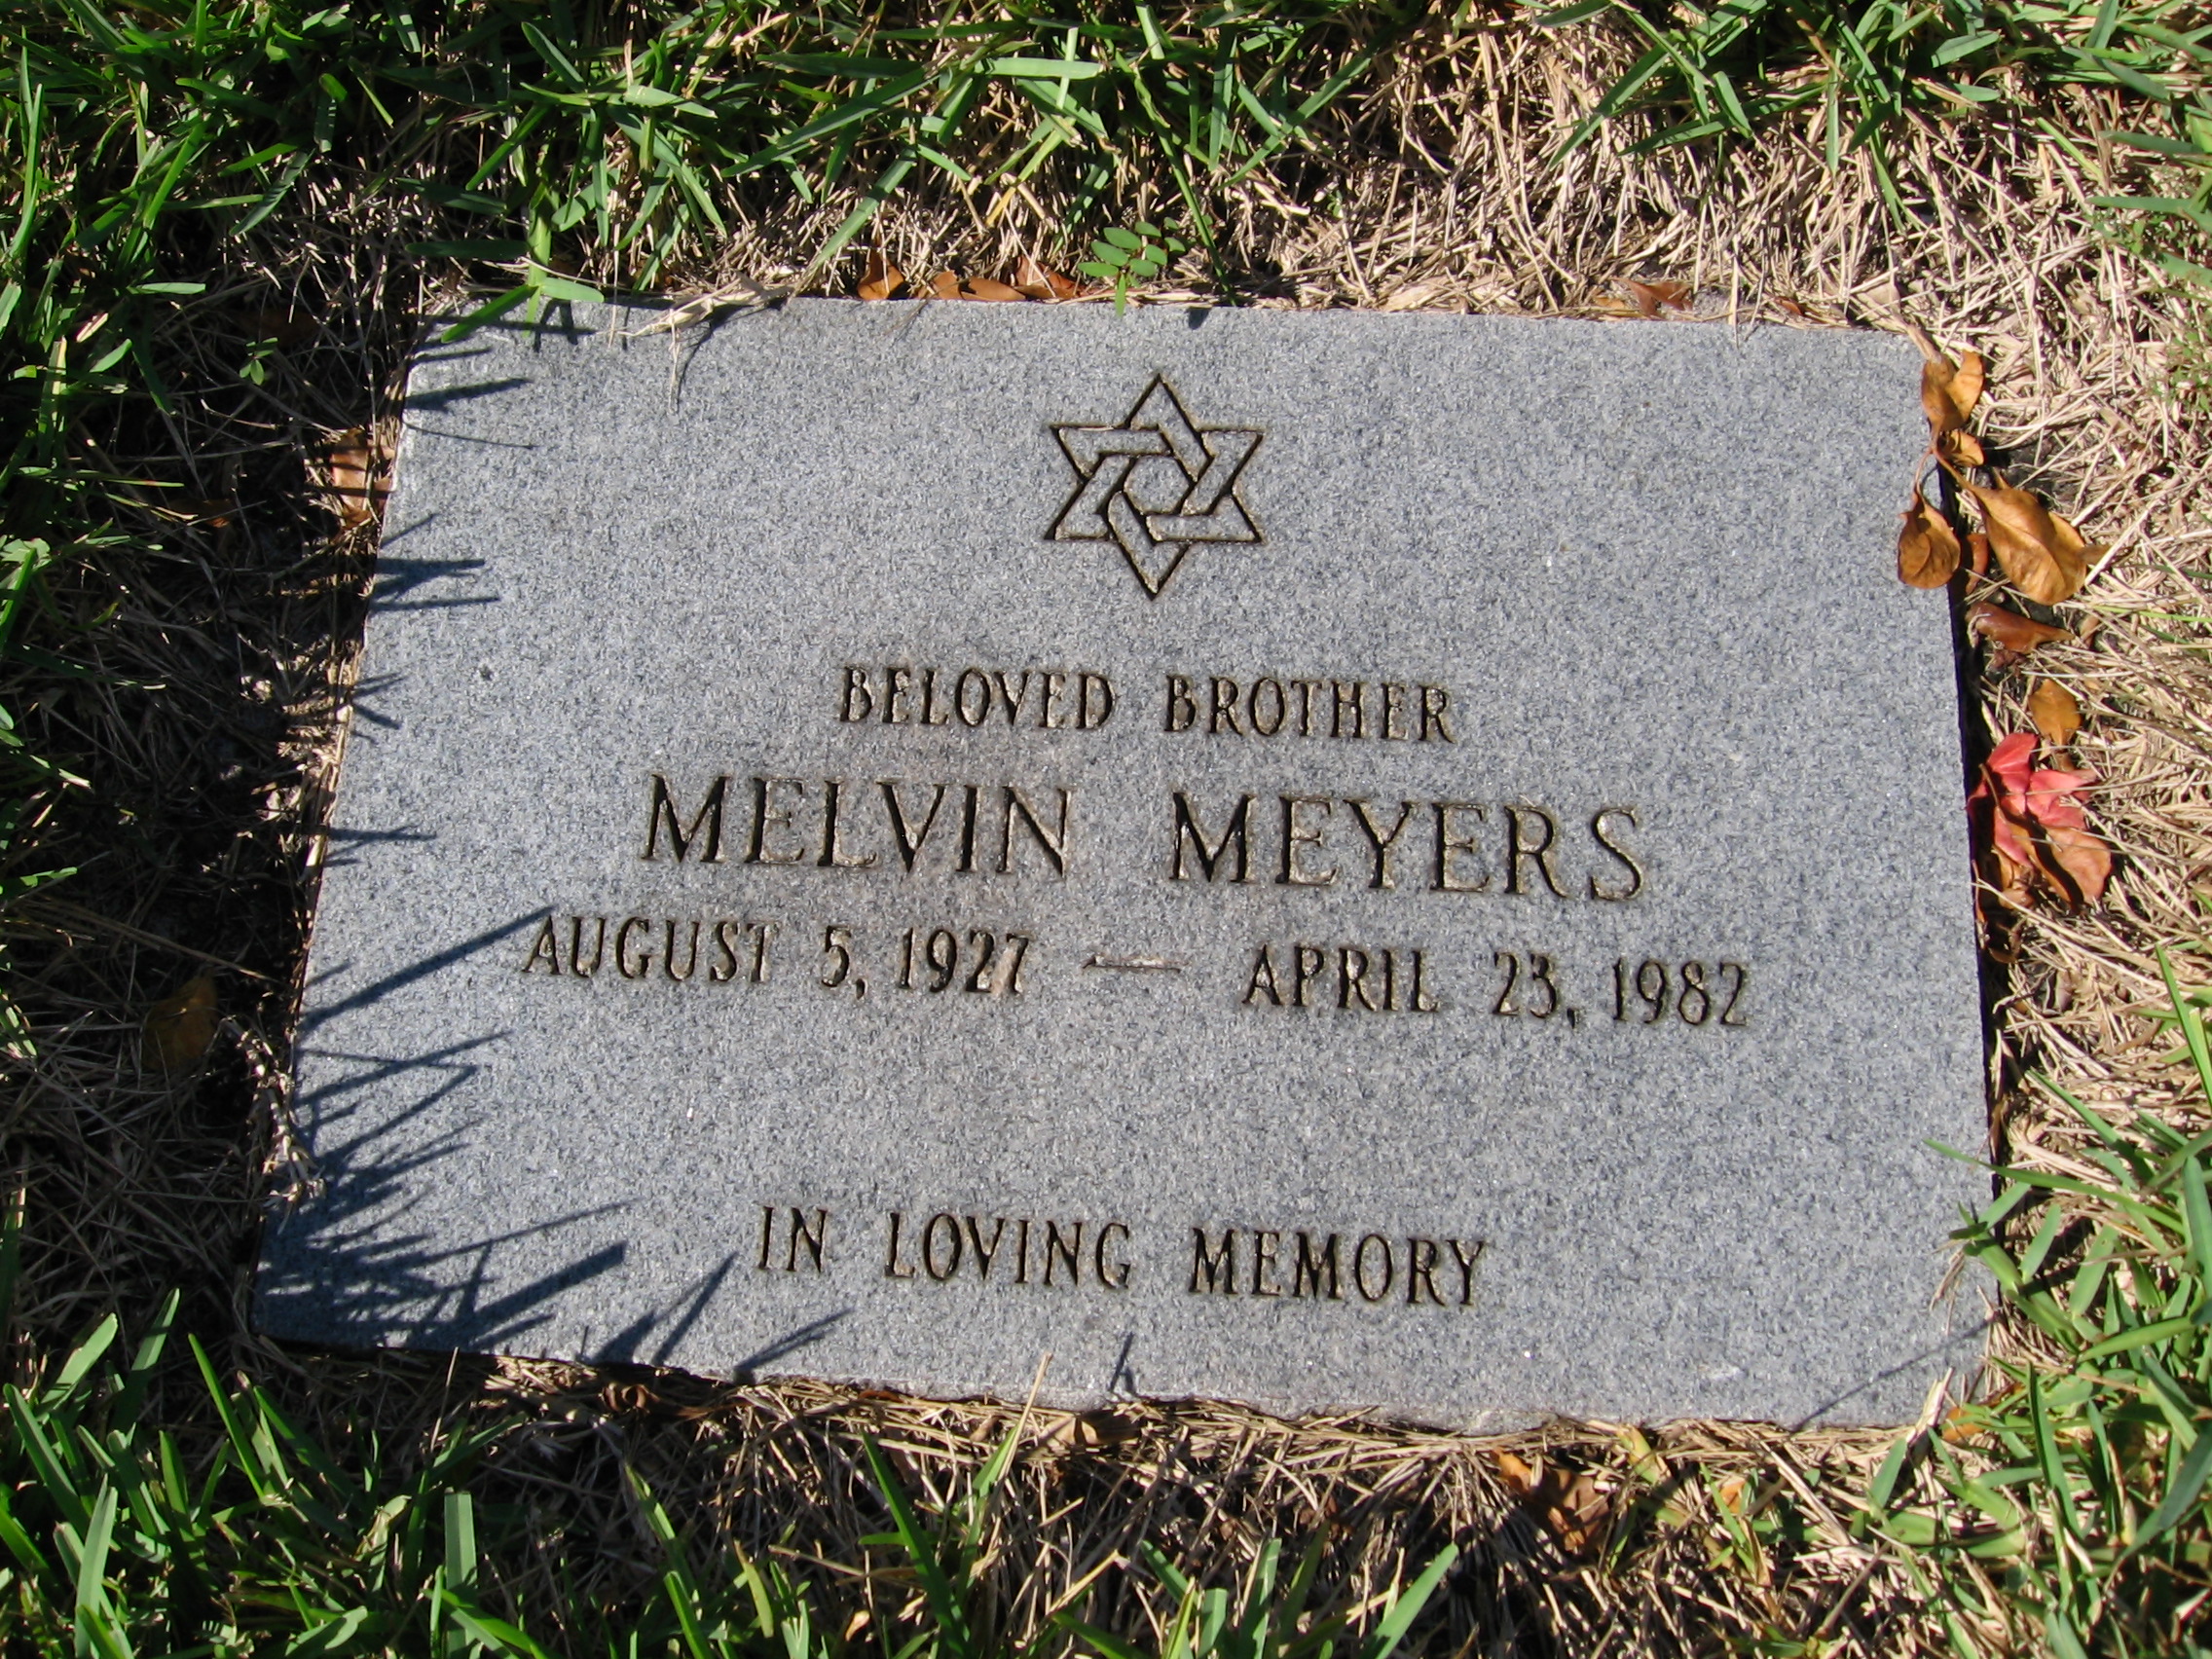 Melvin Meyers